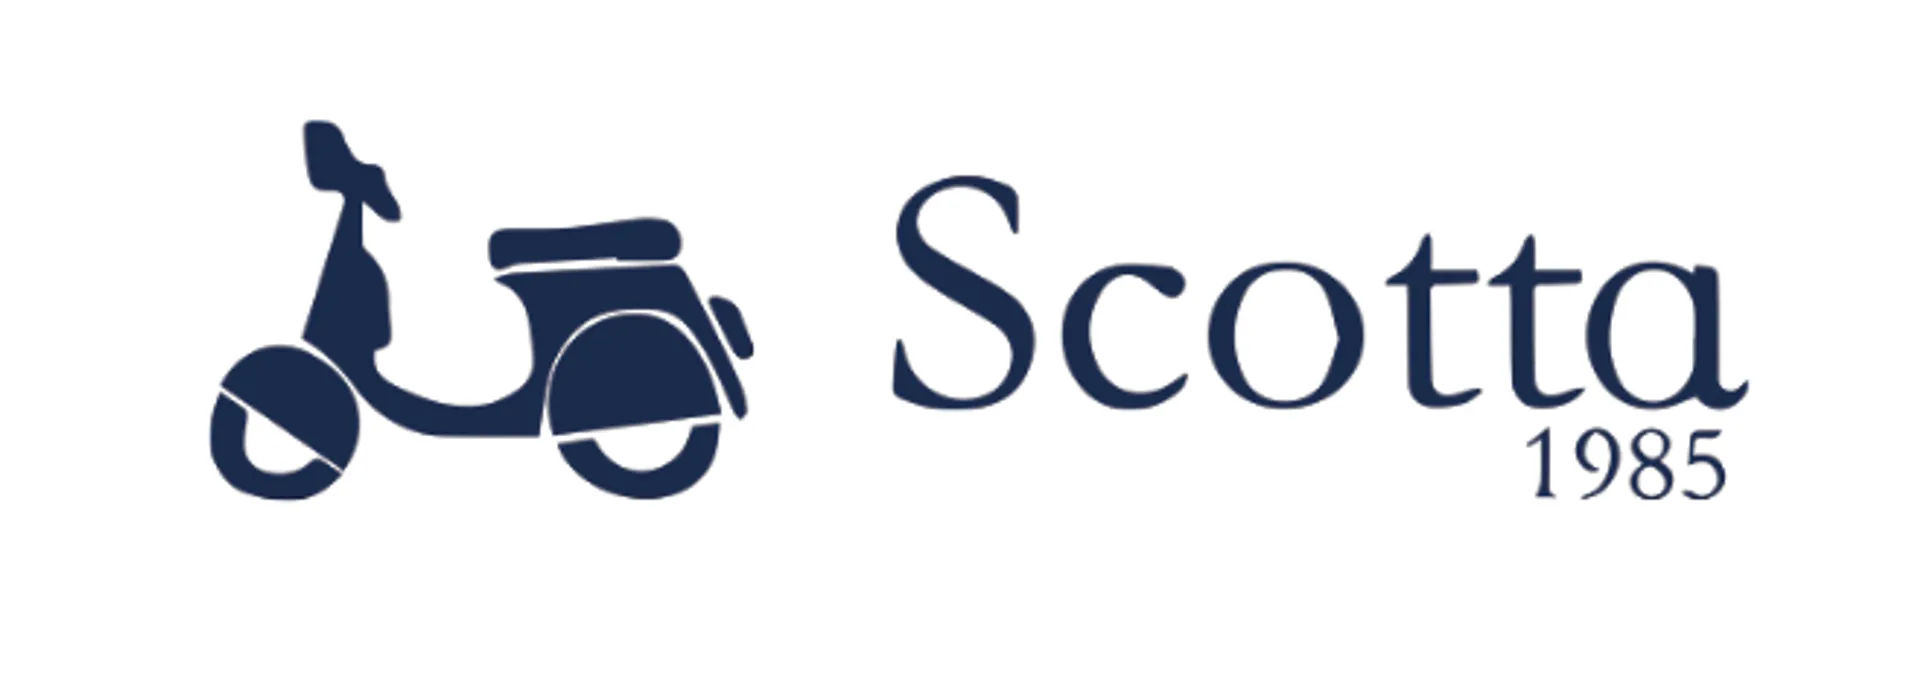 SCOTTA 1985 logo de catálogo